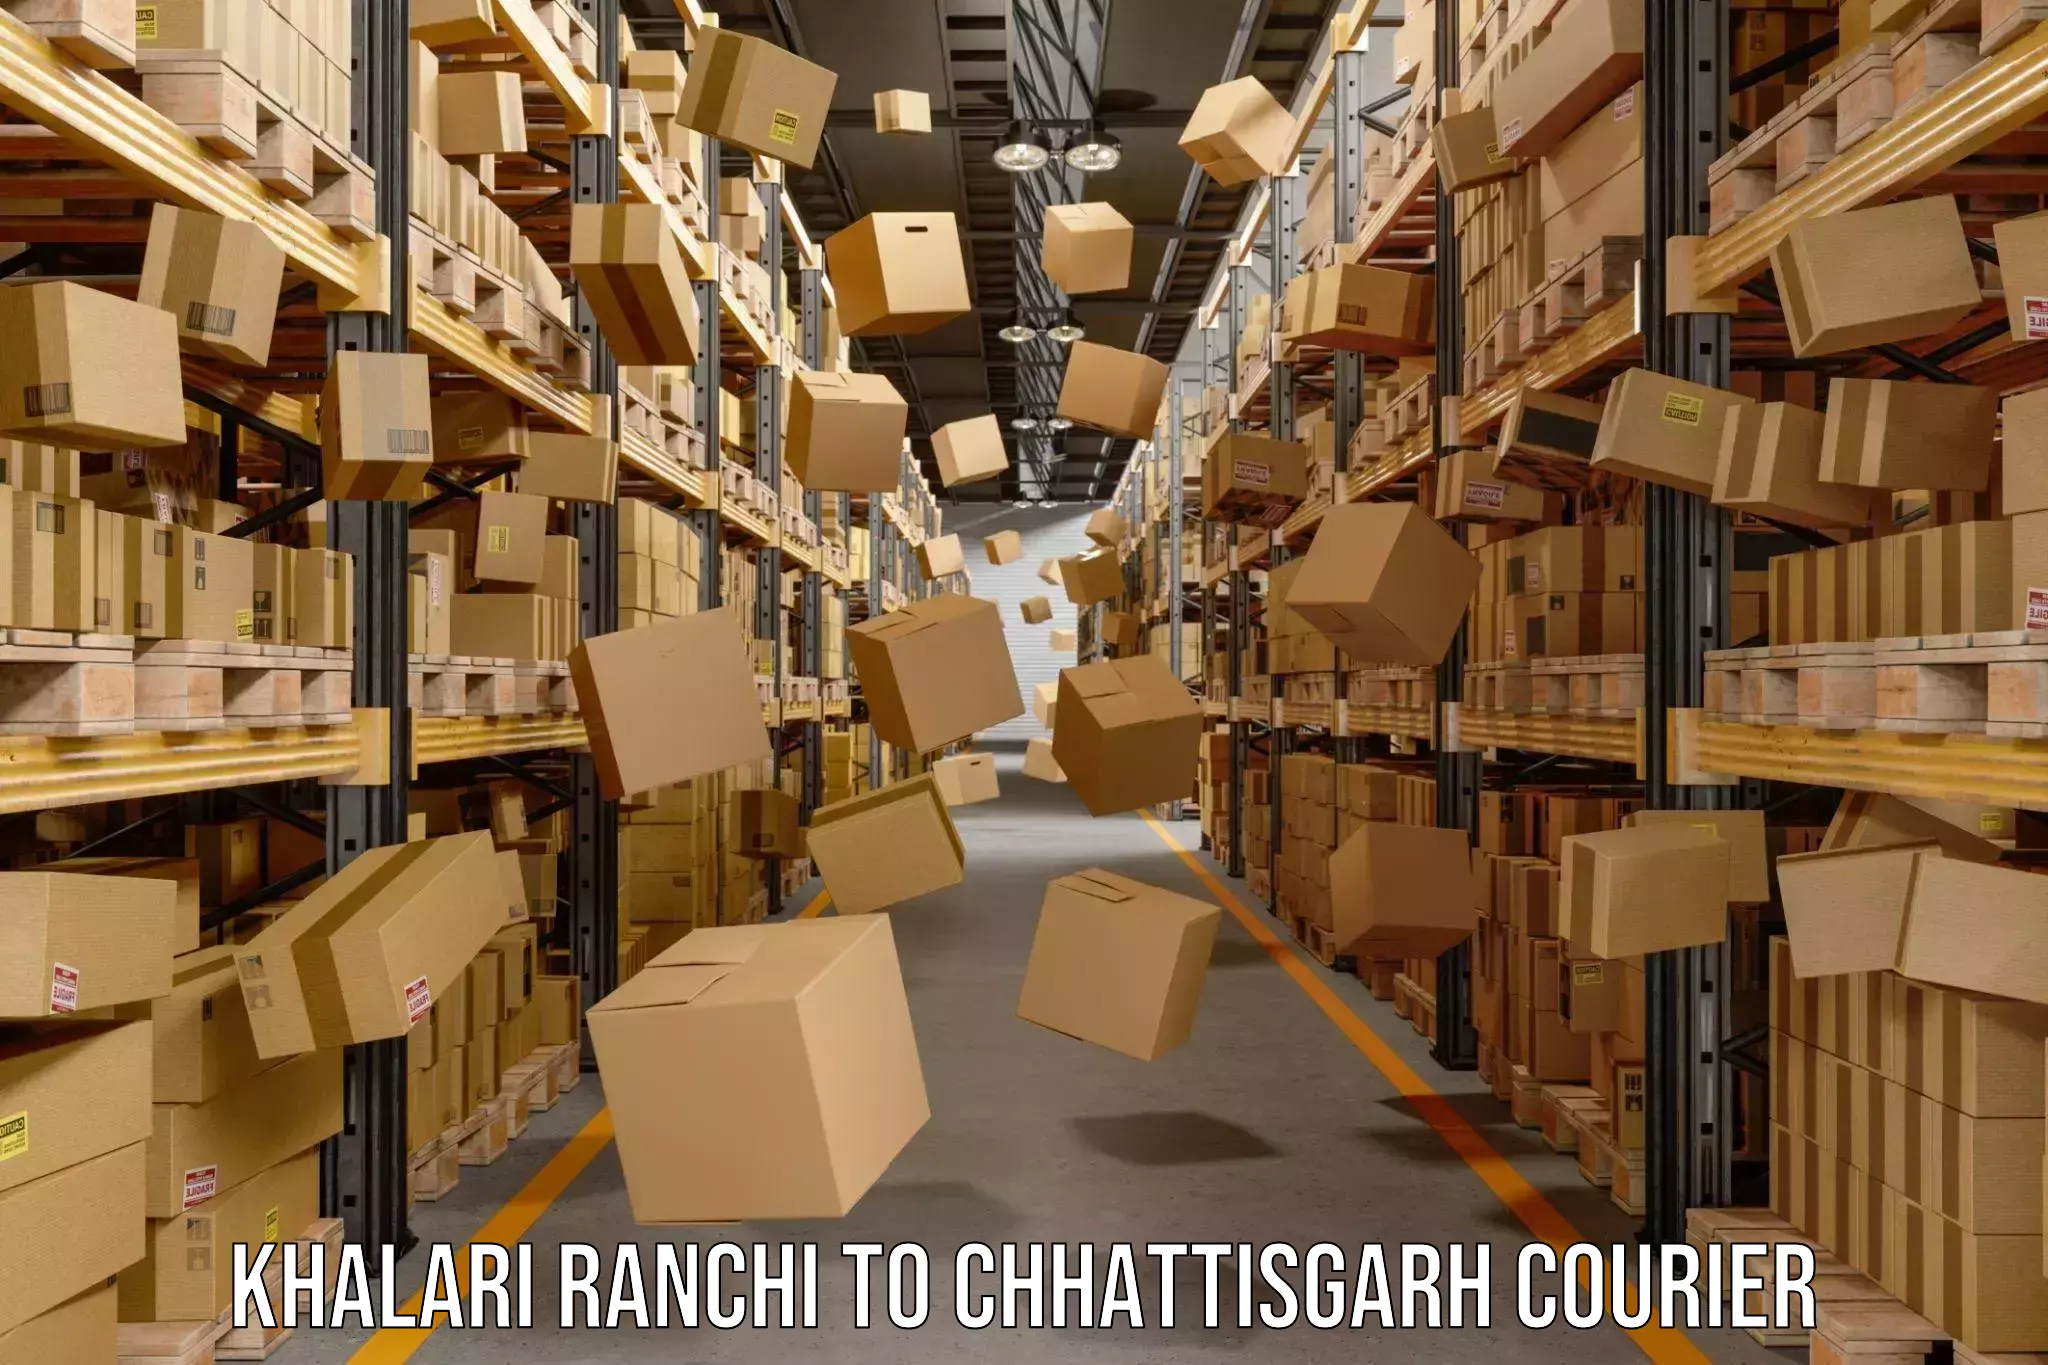 Global shipping networks Khalari Ranchi to Chhattisgarh